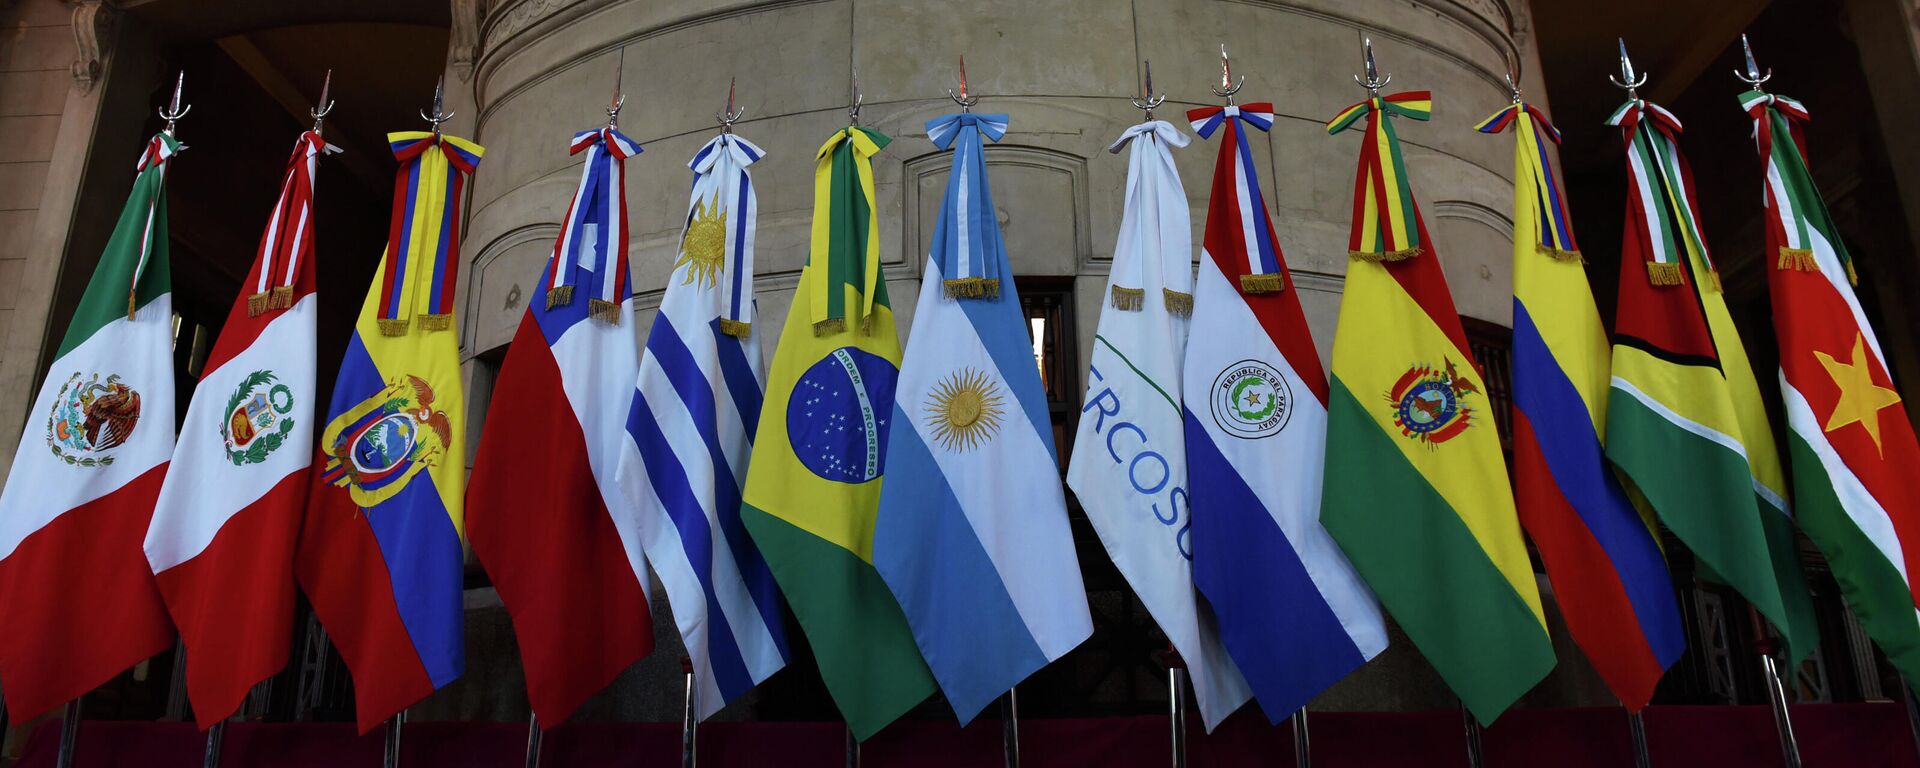 Banderas de miembros del Mercosur y Estados asociados - Sputnik Mundo, 1920, 17.12.2021